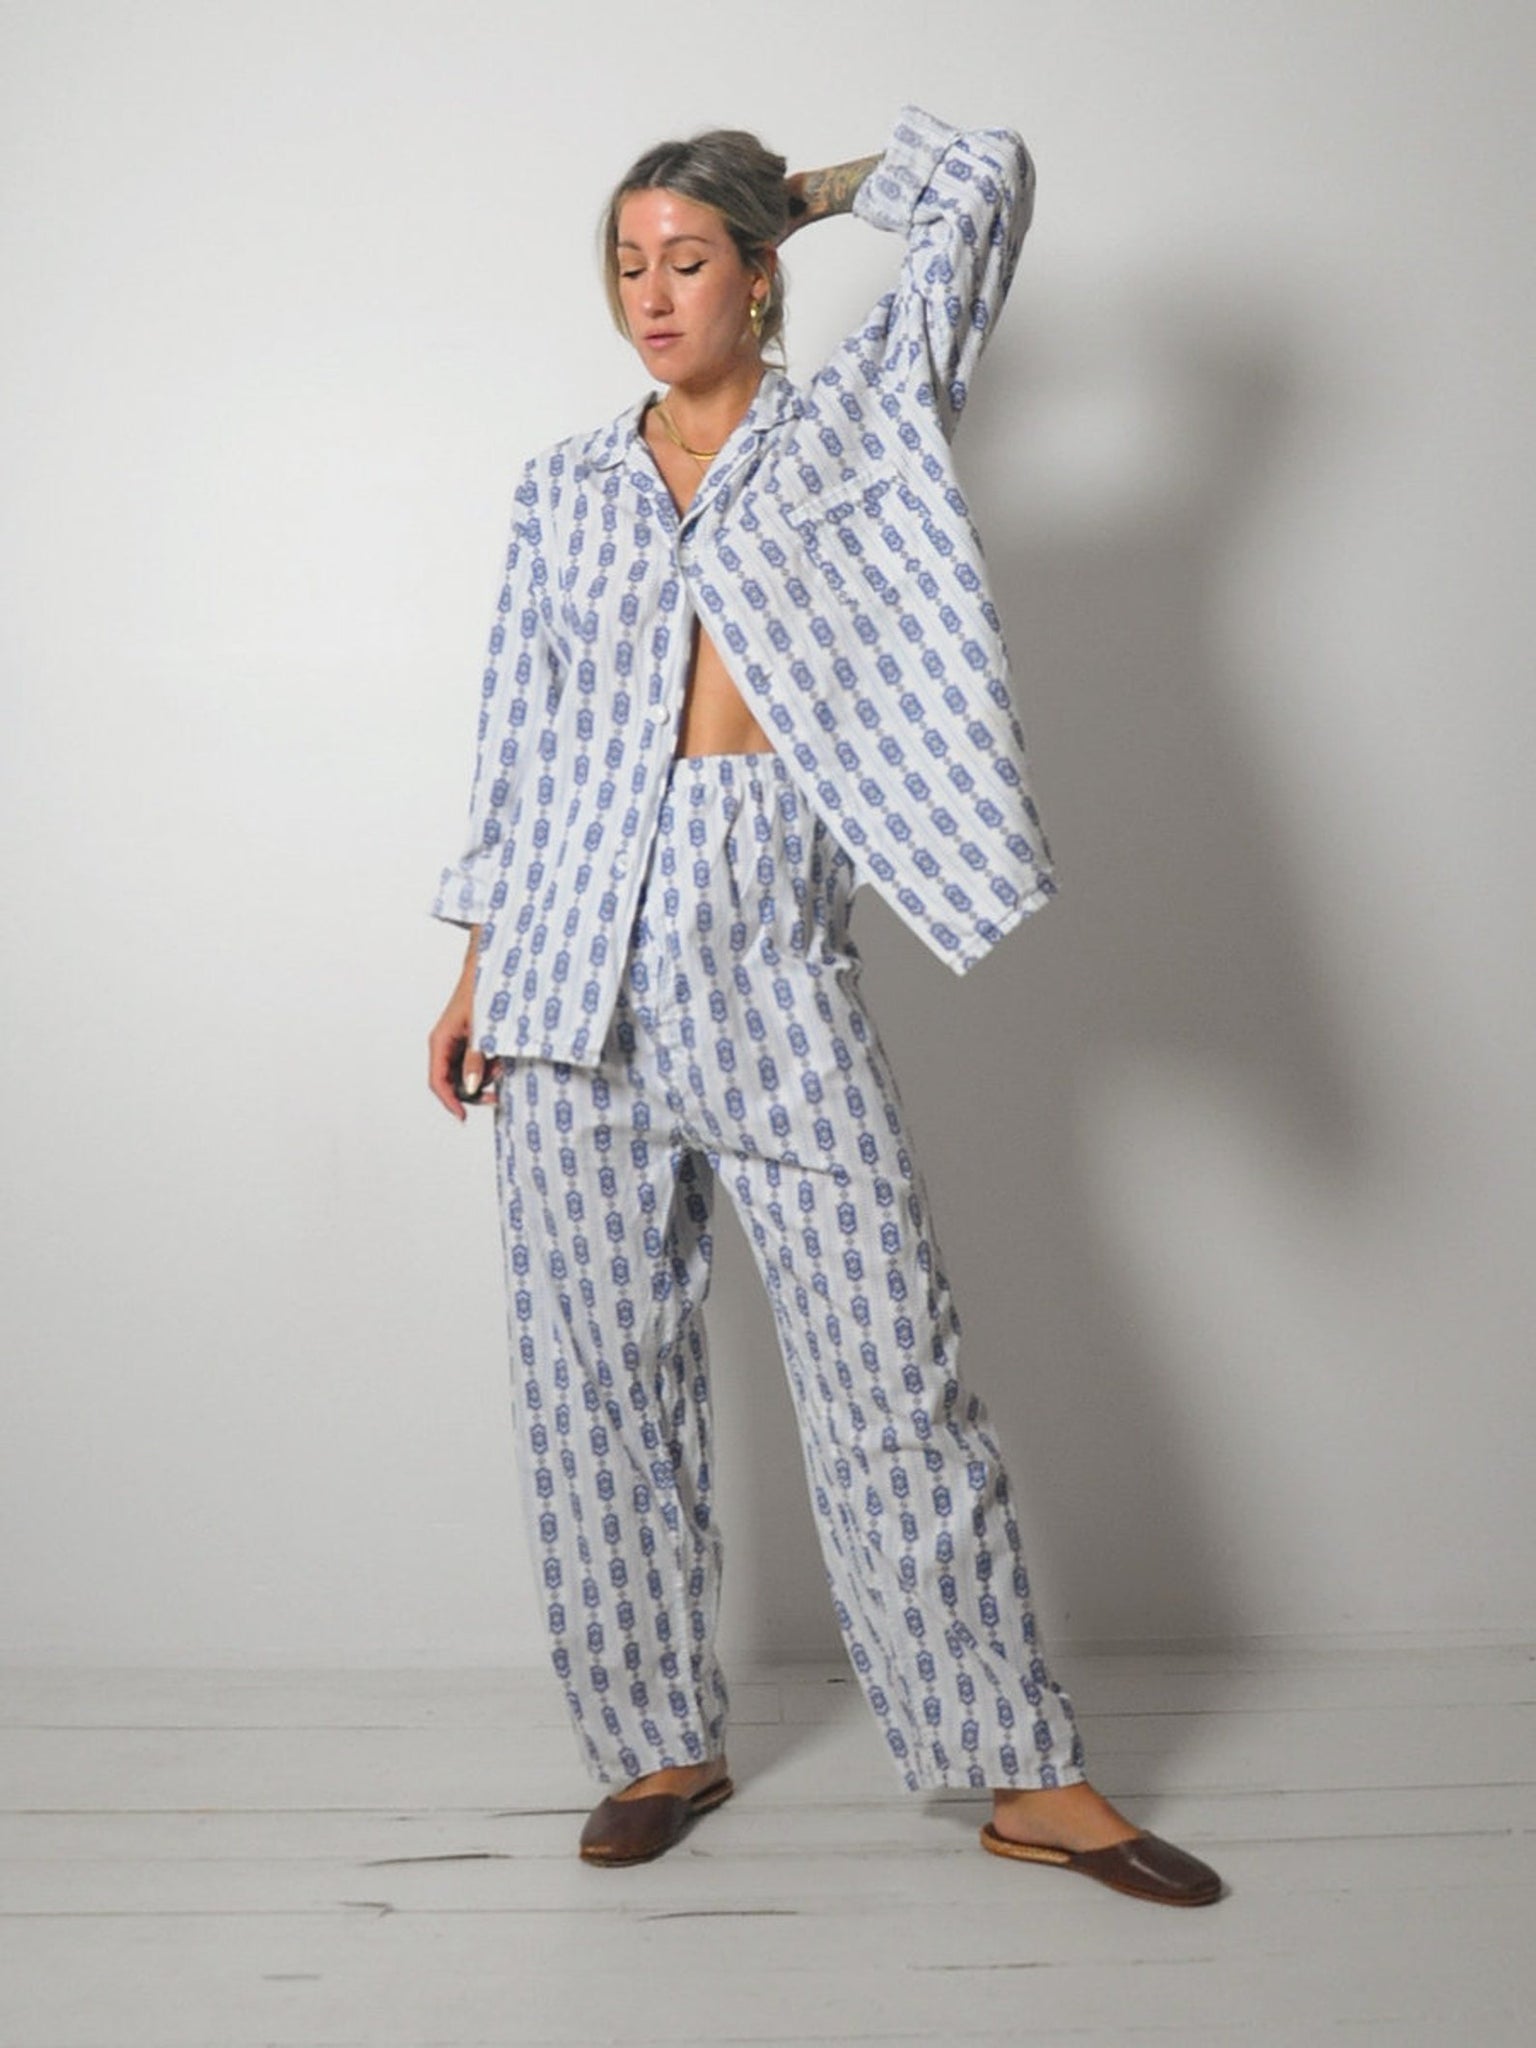 1960's Cotton Pajama Set